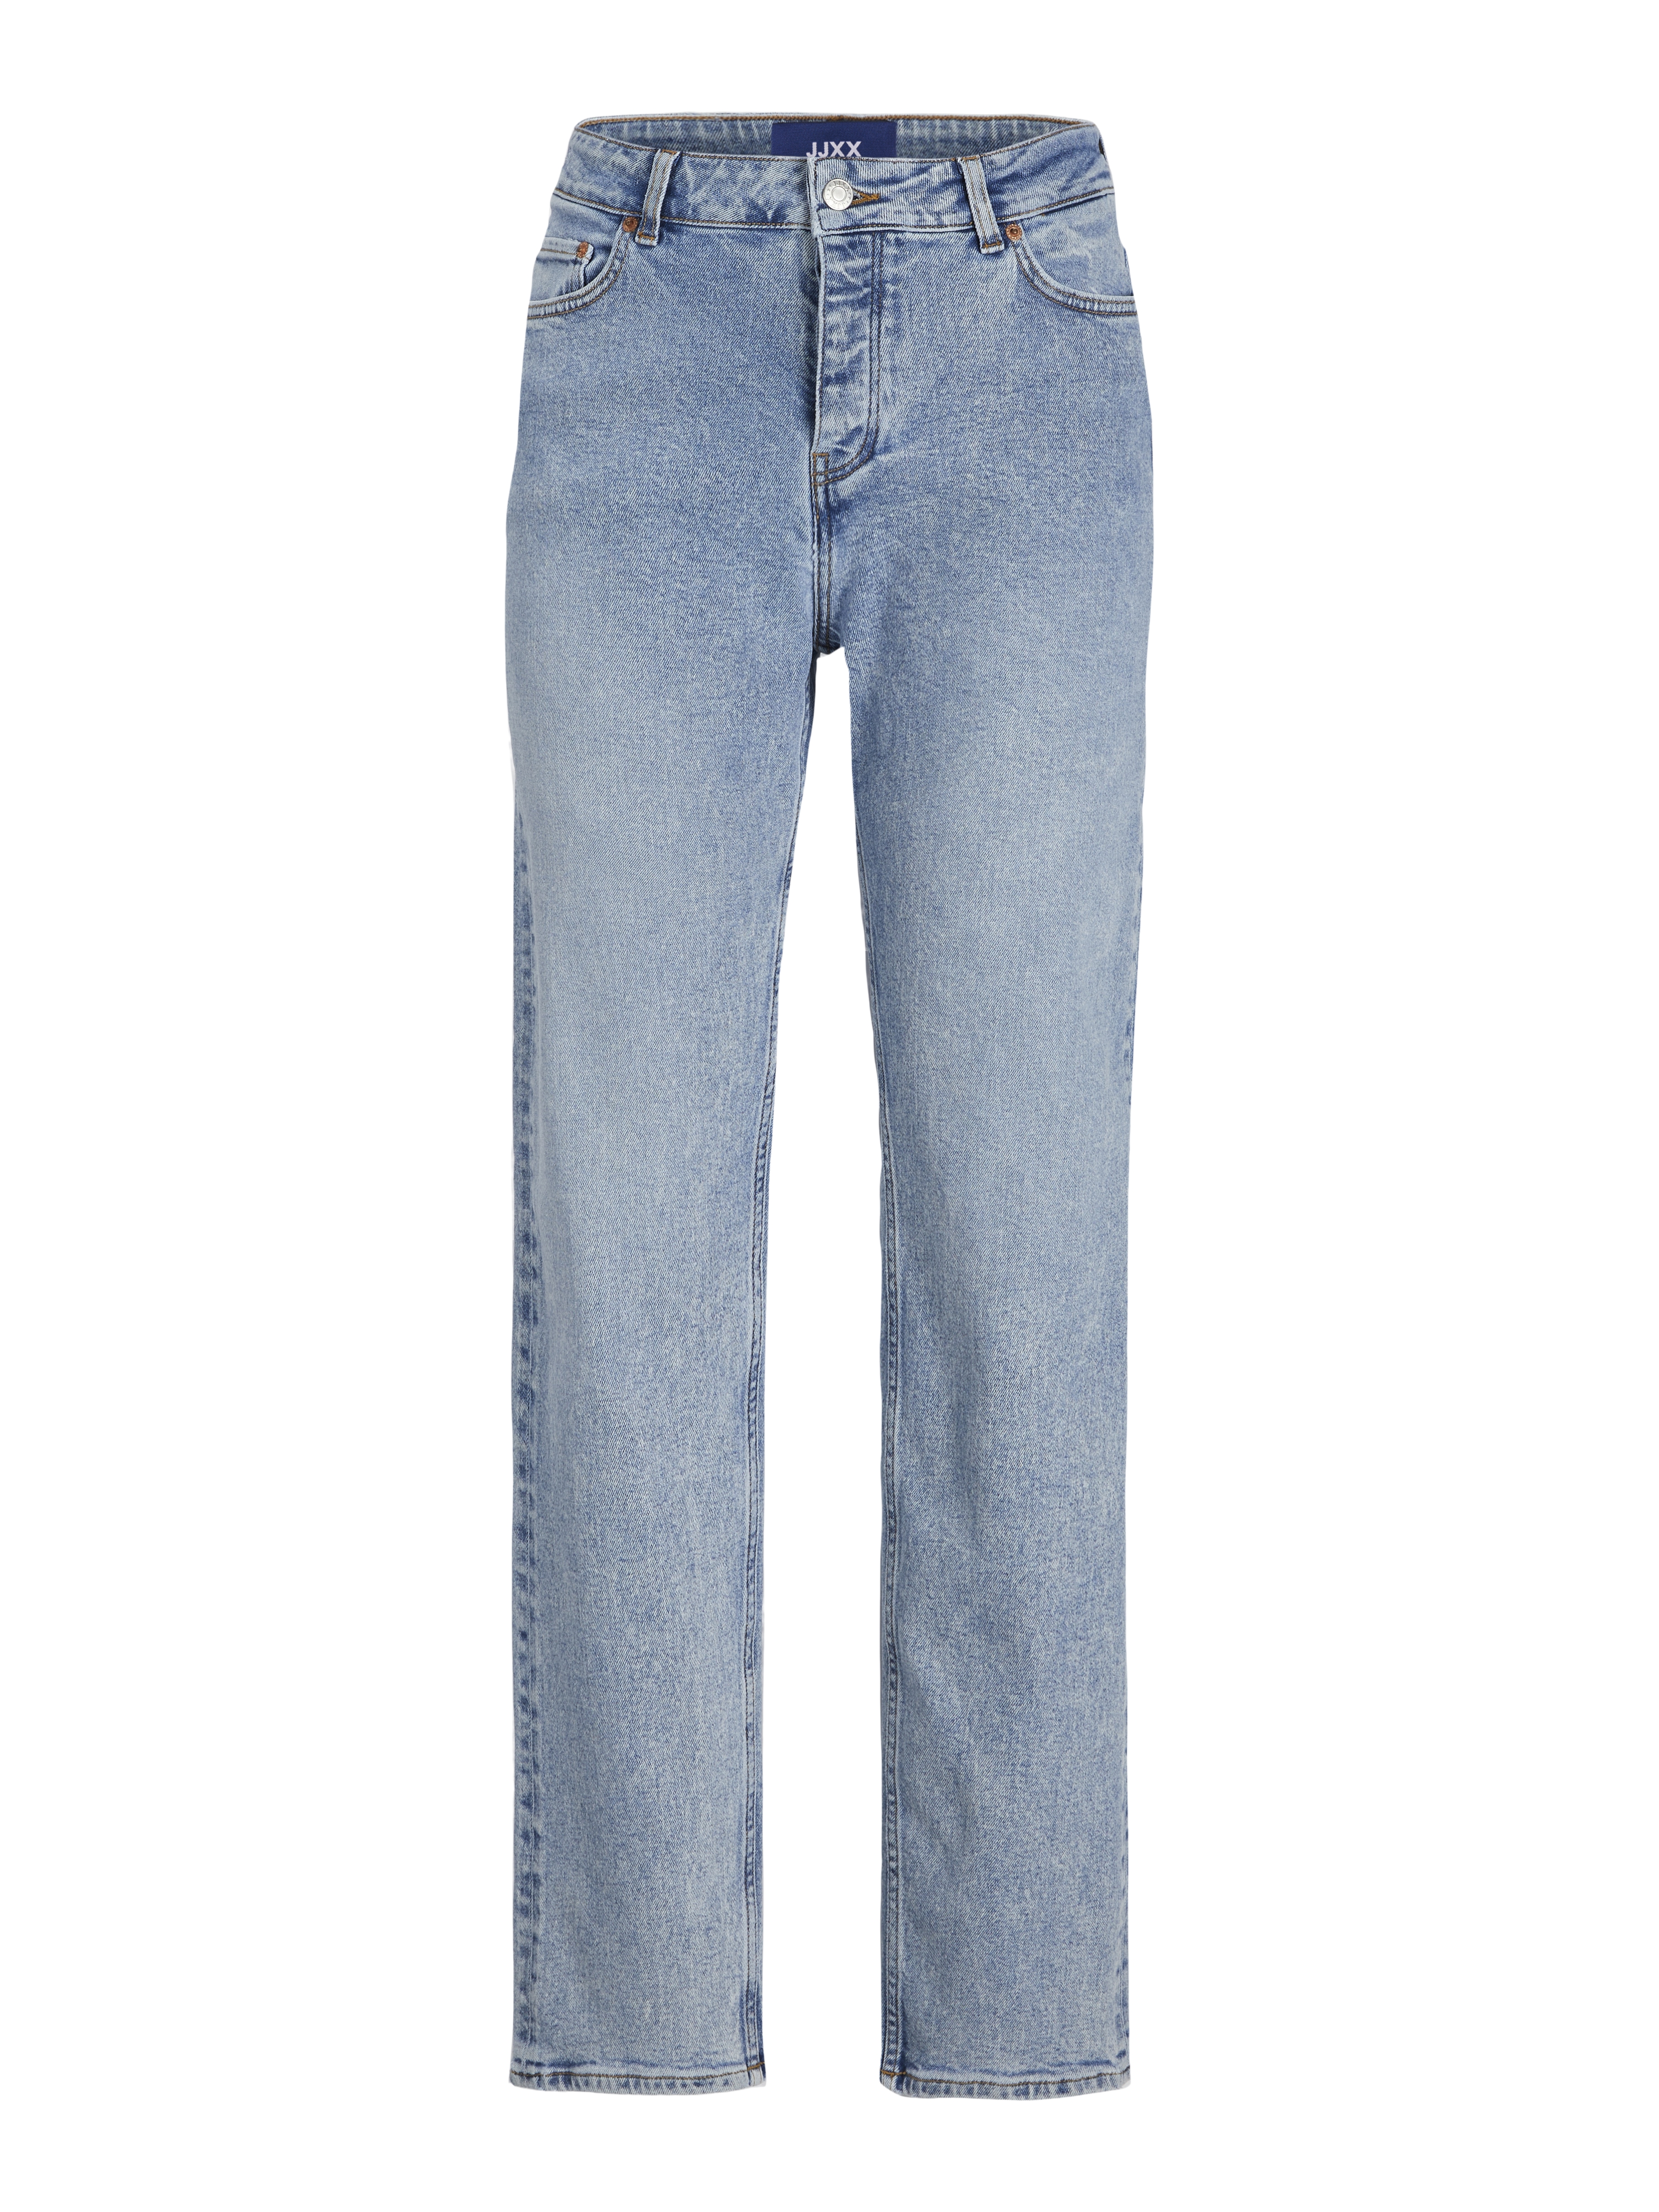  Seoul Jeans, Light Blue Denim, W27/L32